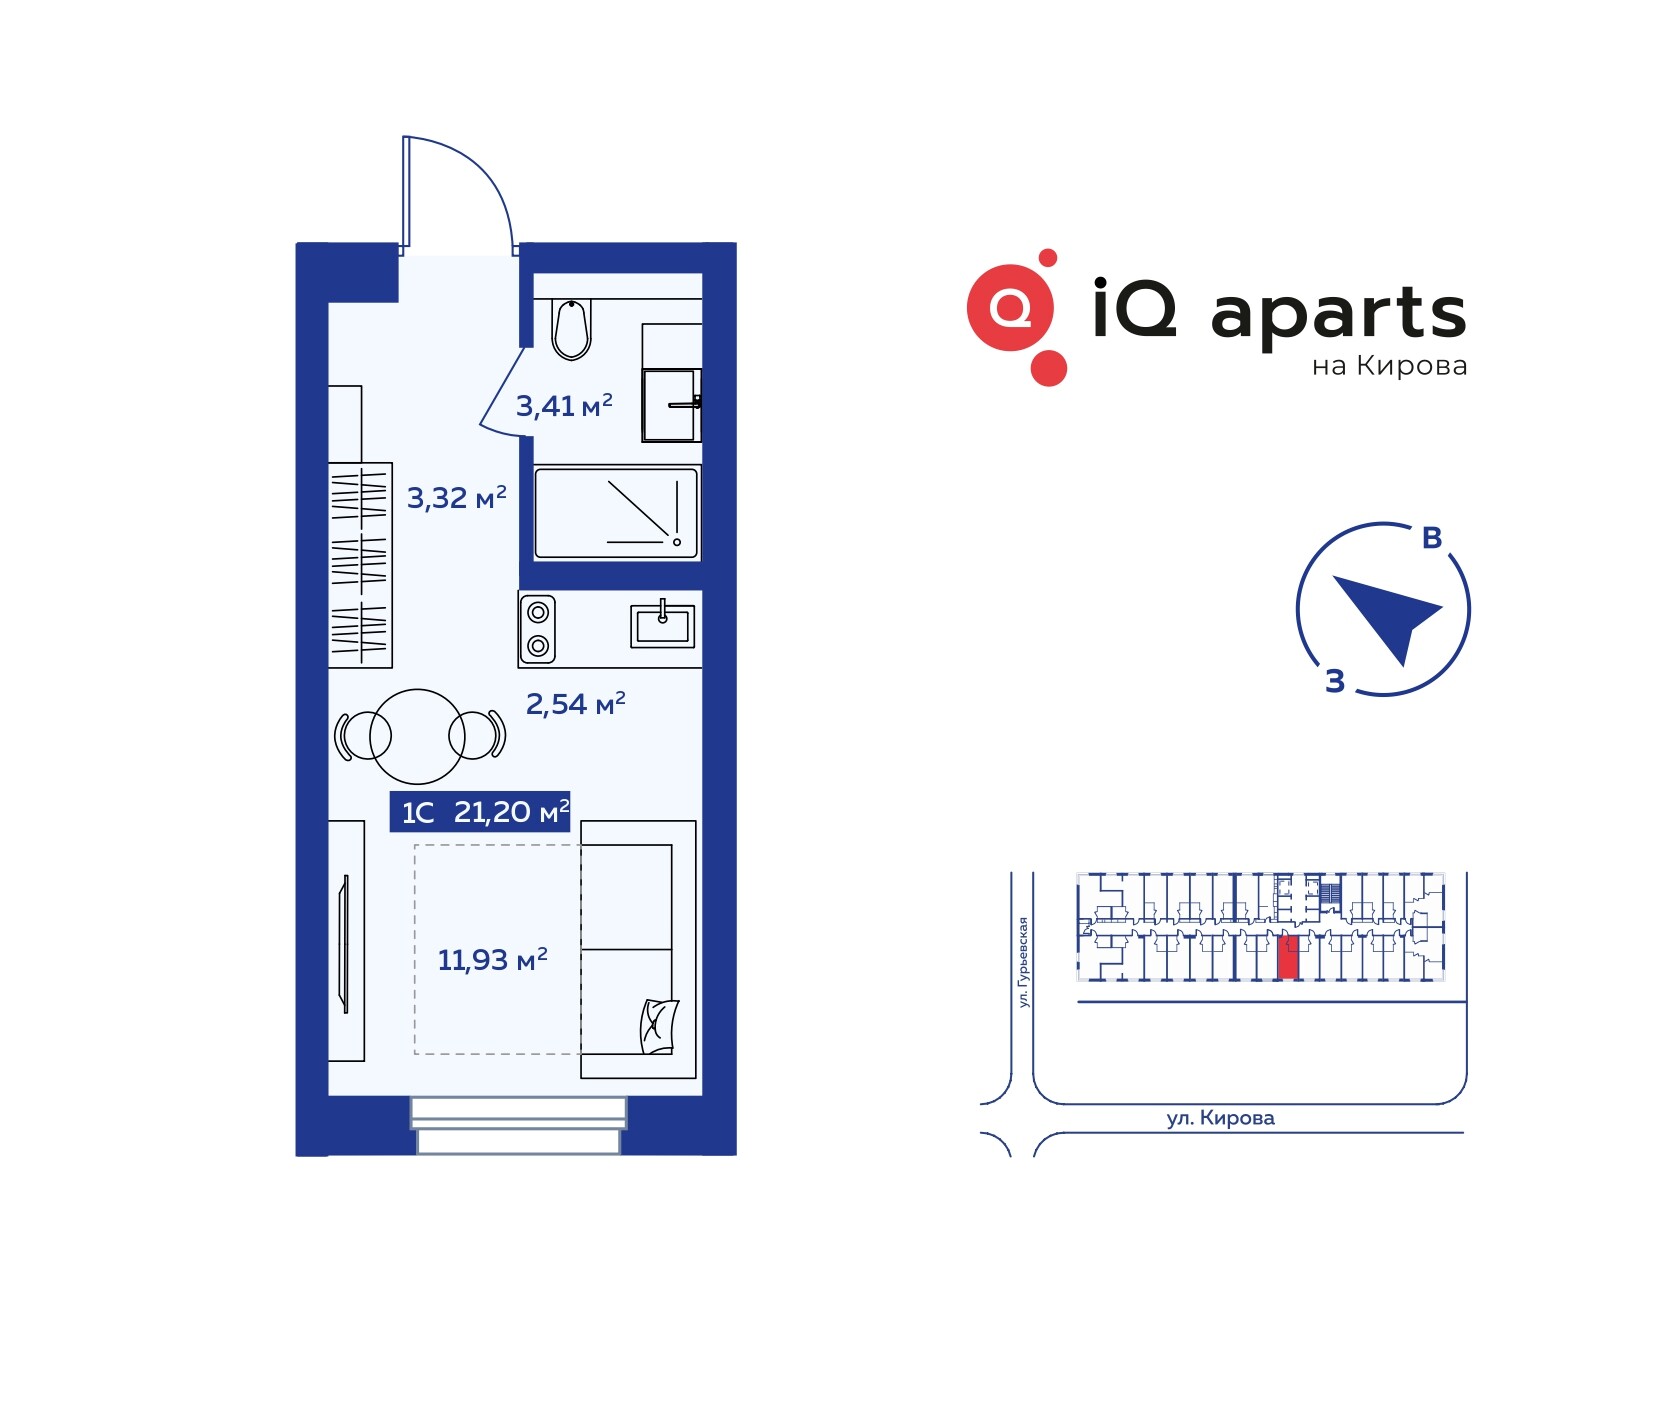 1-комнатная квартира 20.44м2 ЖК IQ Aparts